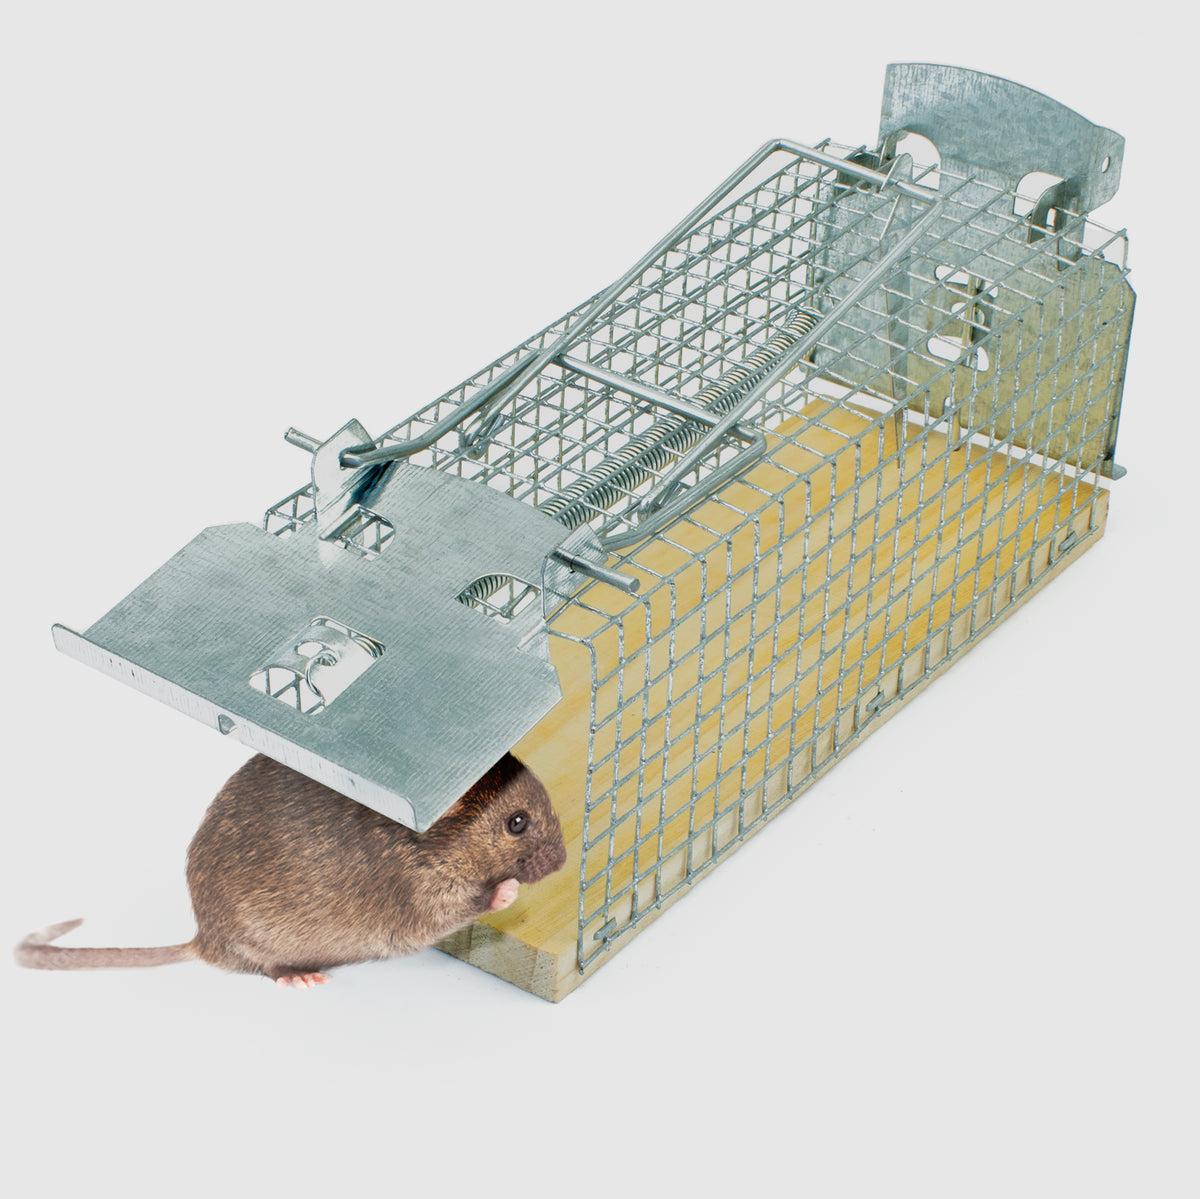 Piège à souris respectueux des animaux pour une utilisation